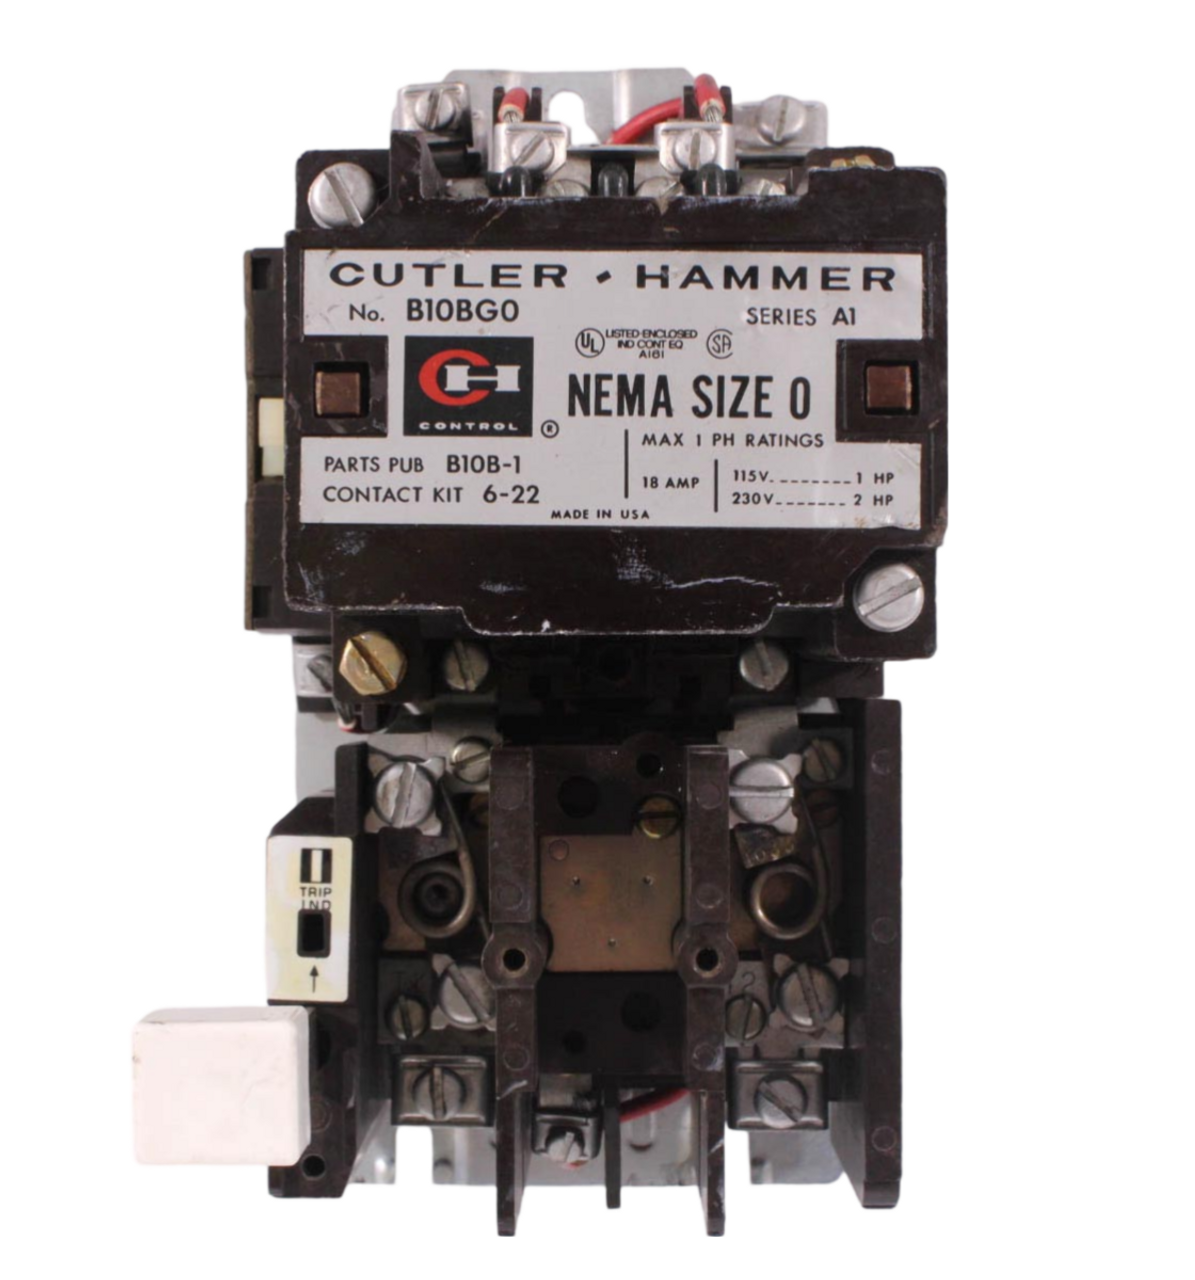 Cutler Hammer B10BG0 Motor Starter NEMA Size 0 18A 115V at 1HP 230V at 2HP